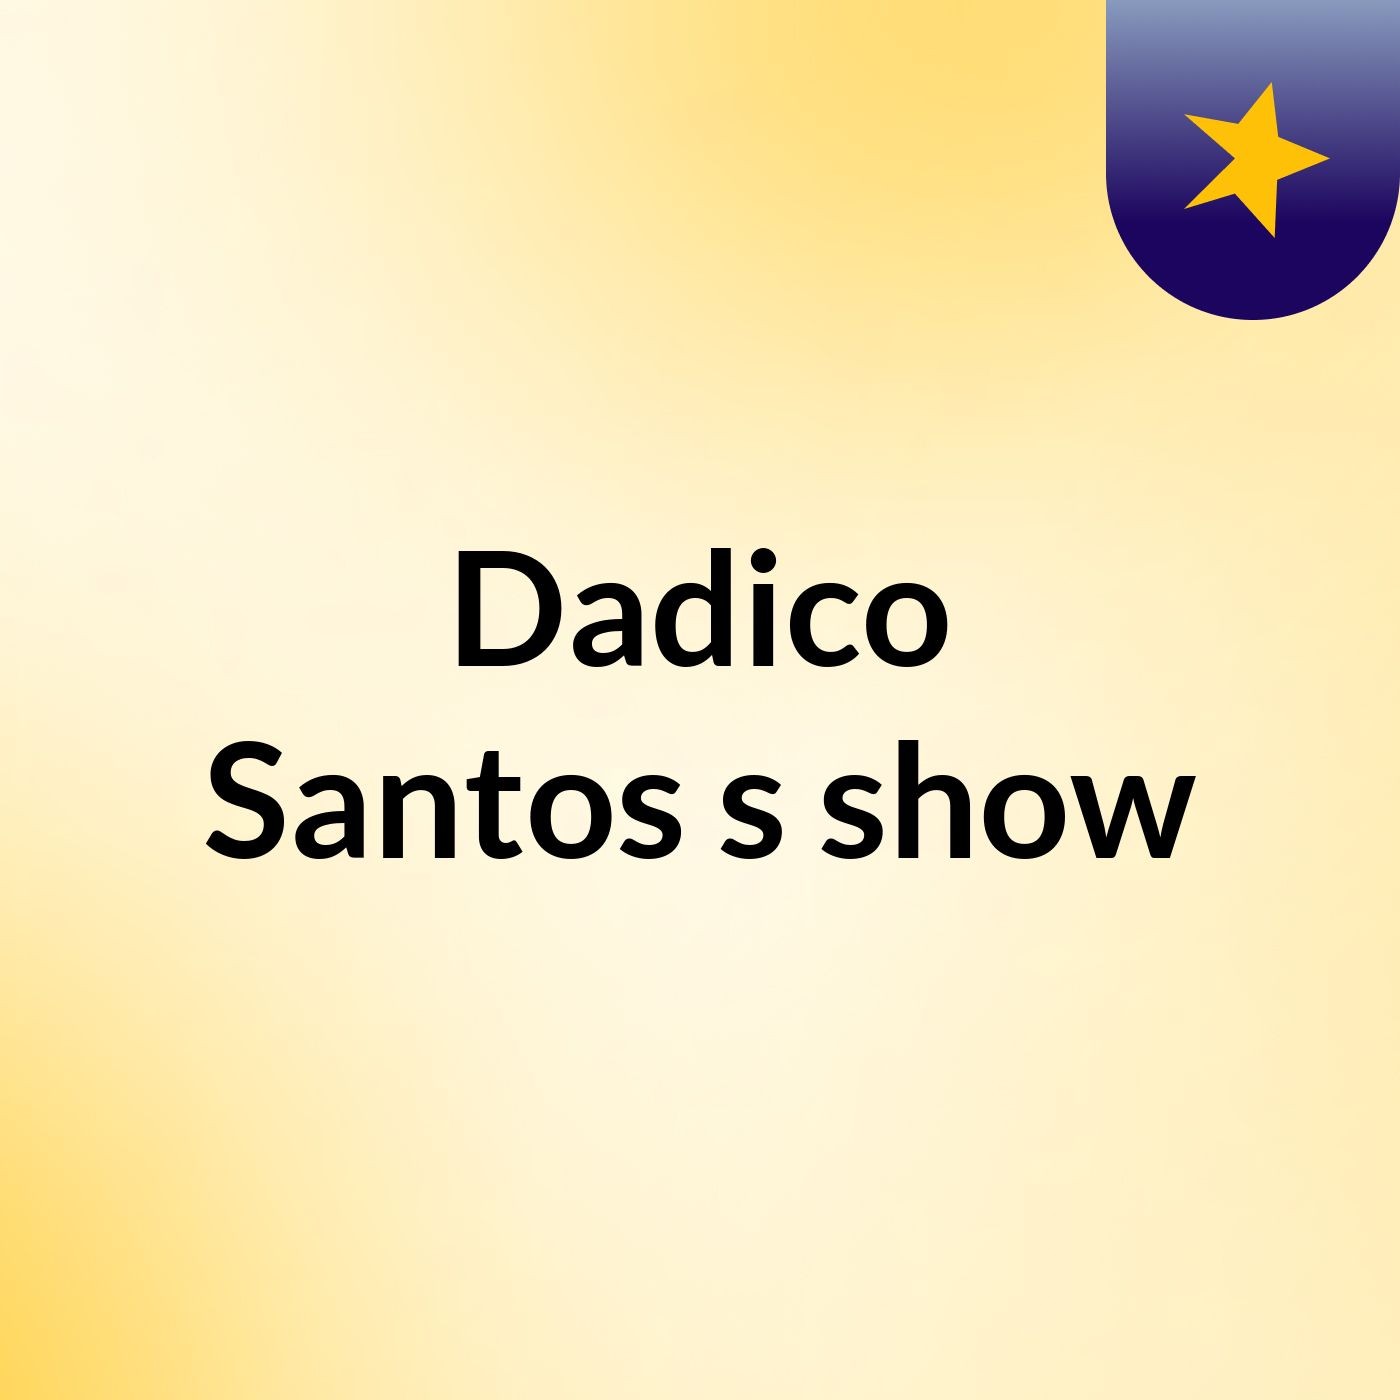 Dadico Santos's show